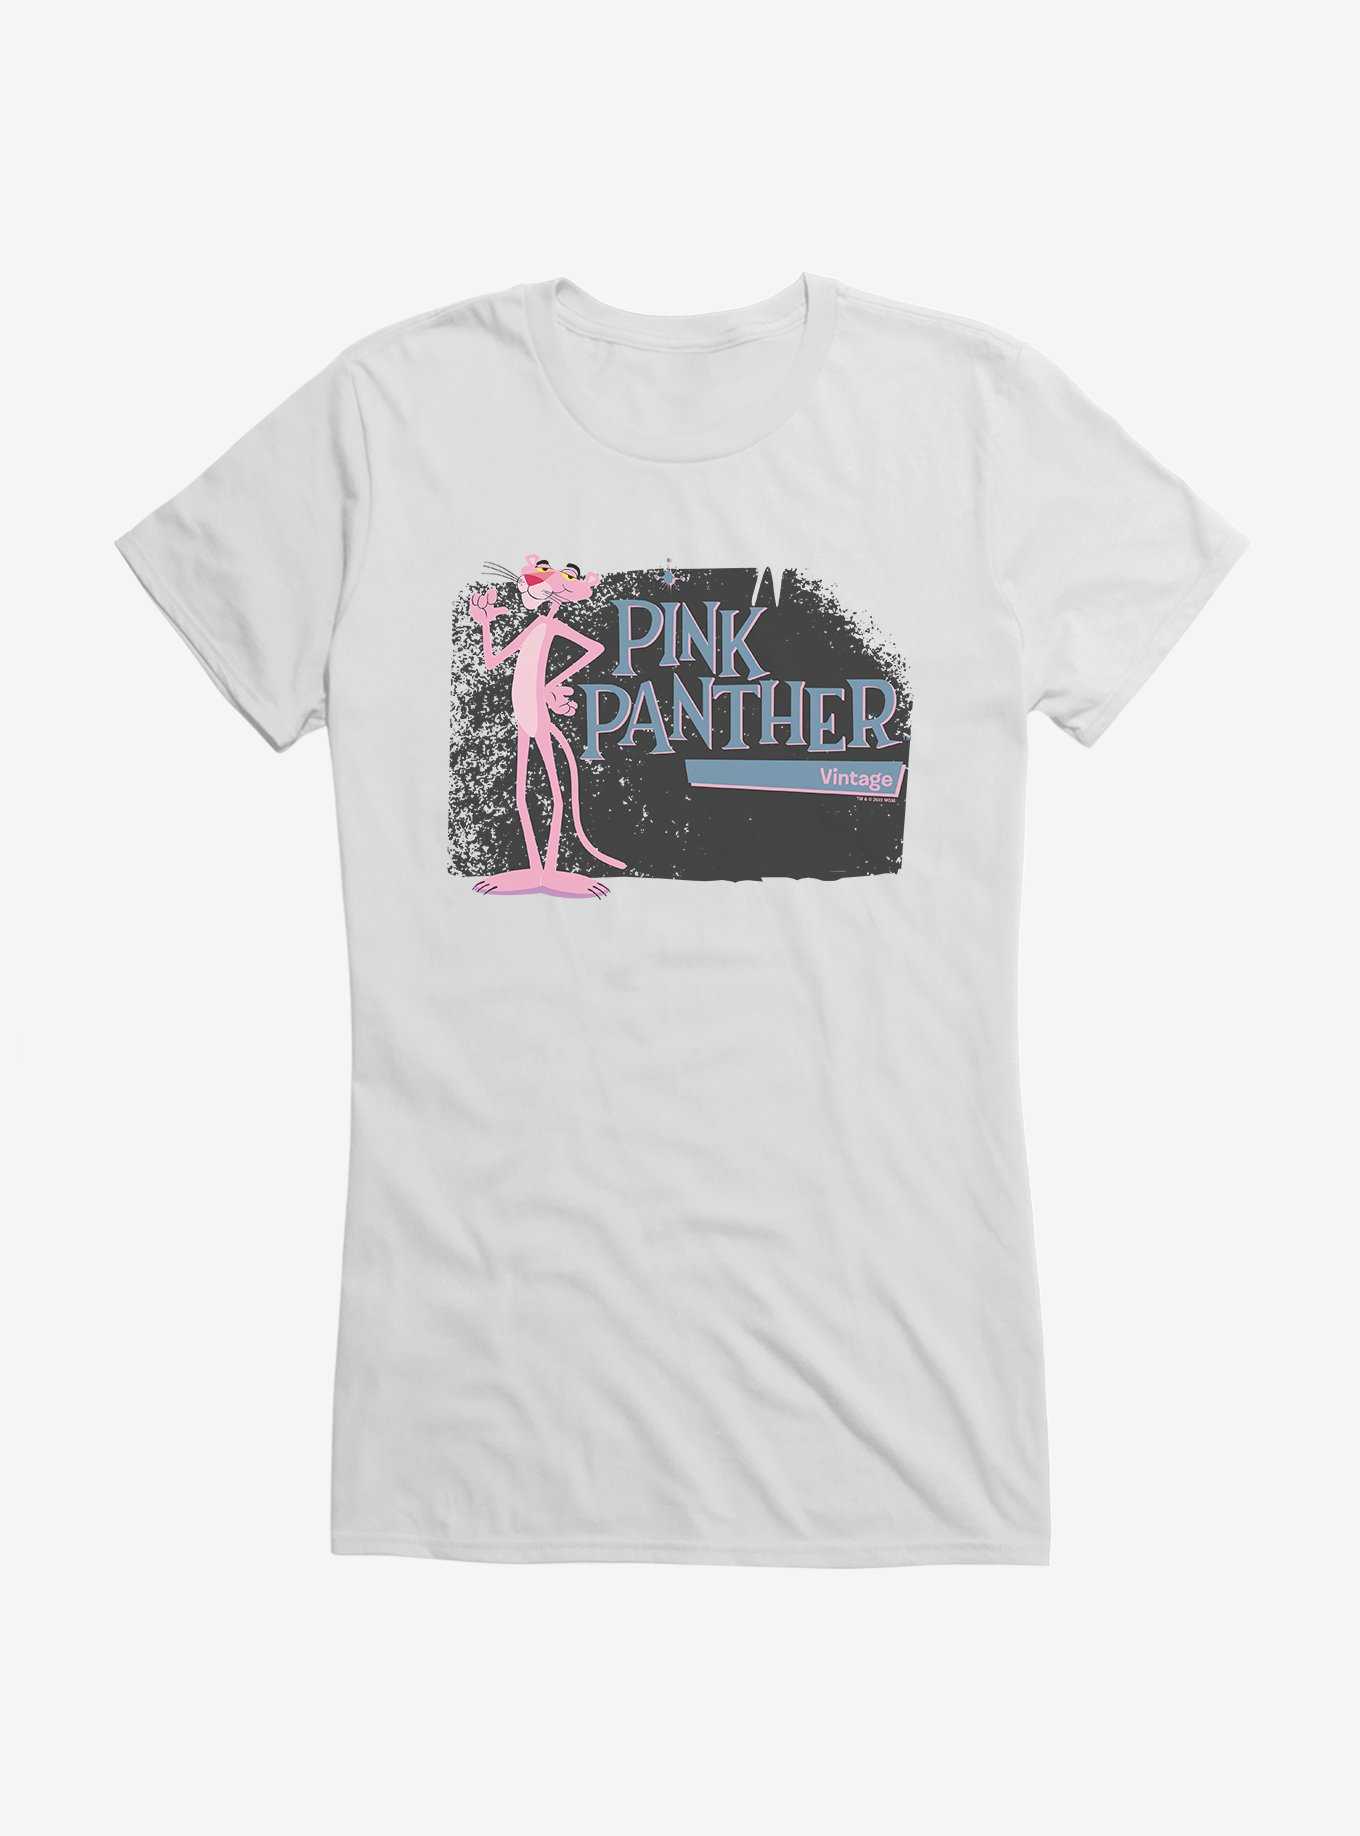 Pink Panther Vintage Girls T-Shirt, , hi-res